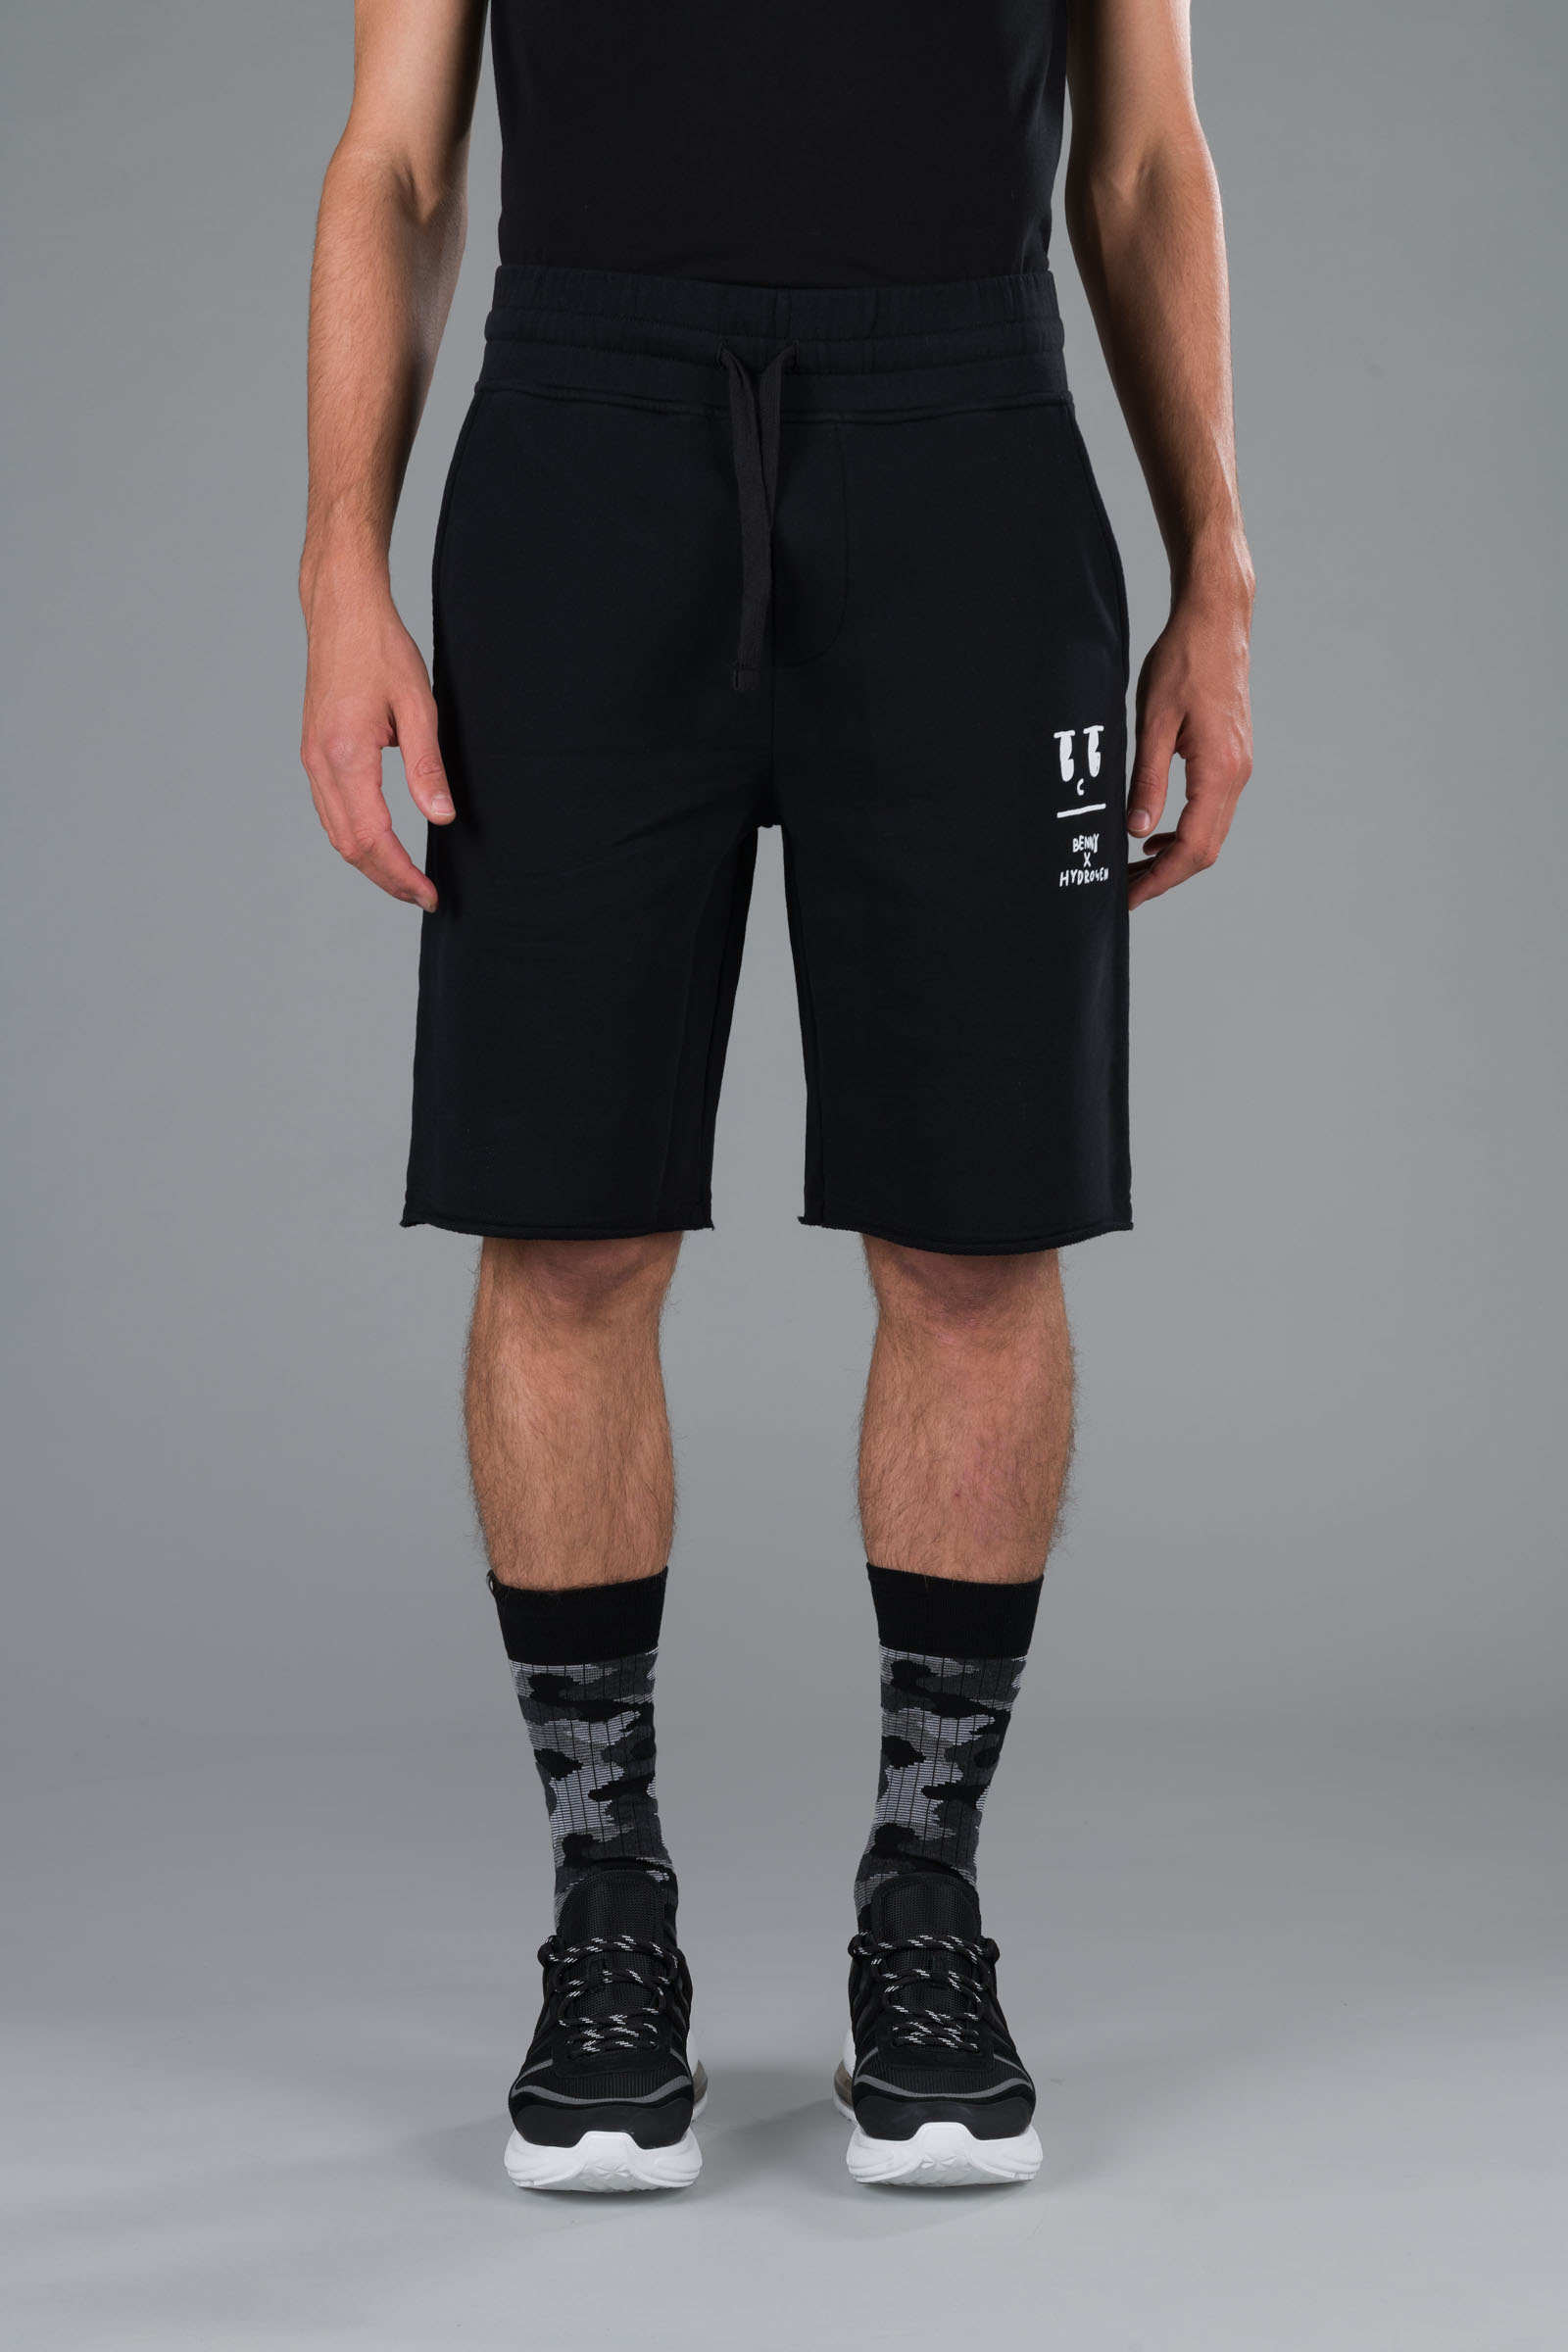 BENNY SHORTS - BLACK - Hydrogen - Luxury Sportwear